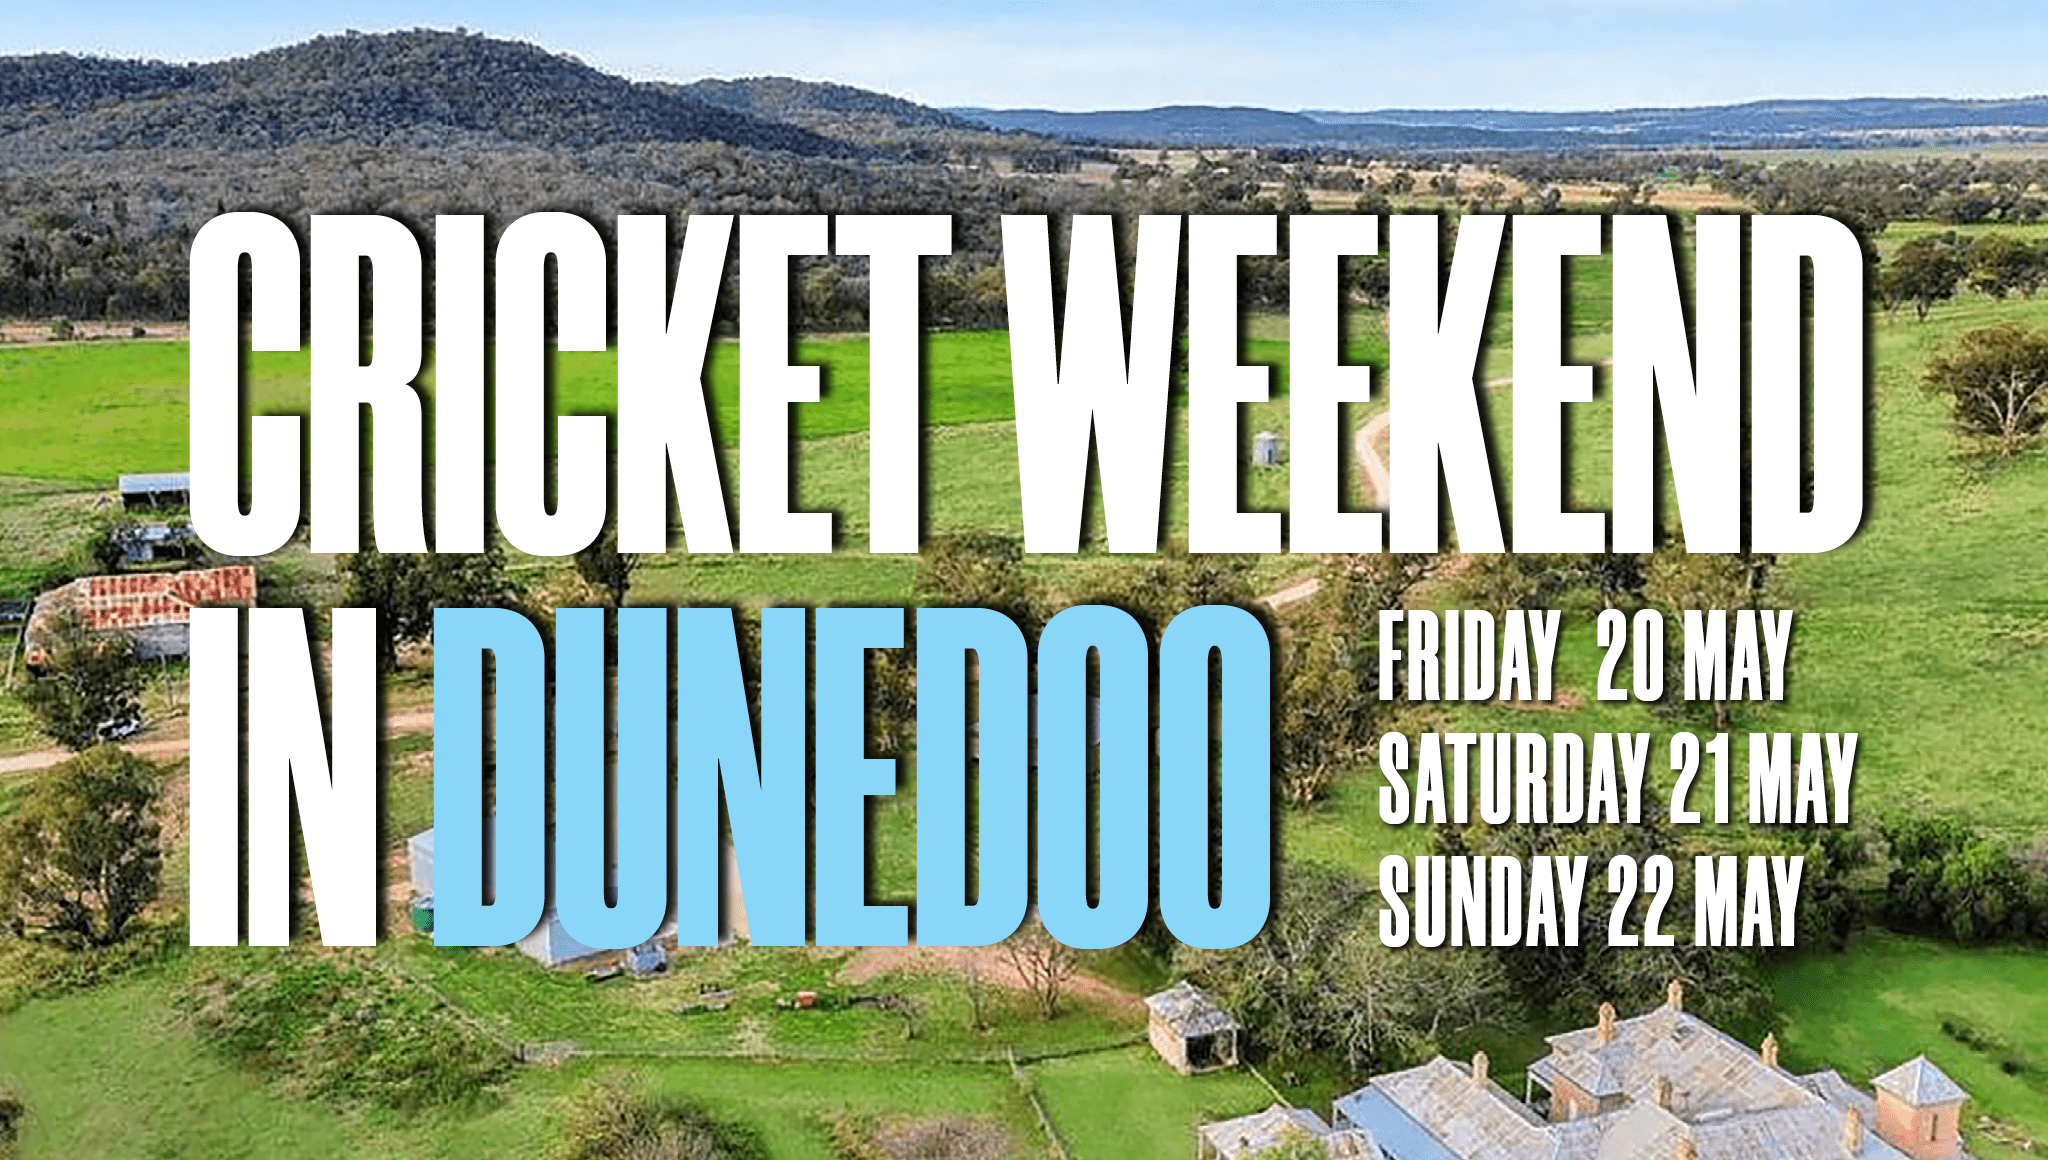 Dunedoo Cricket Weekend